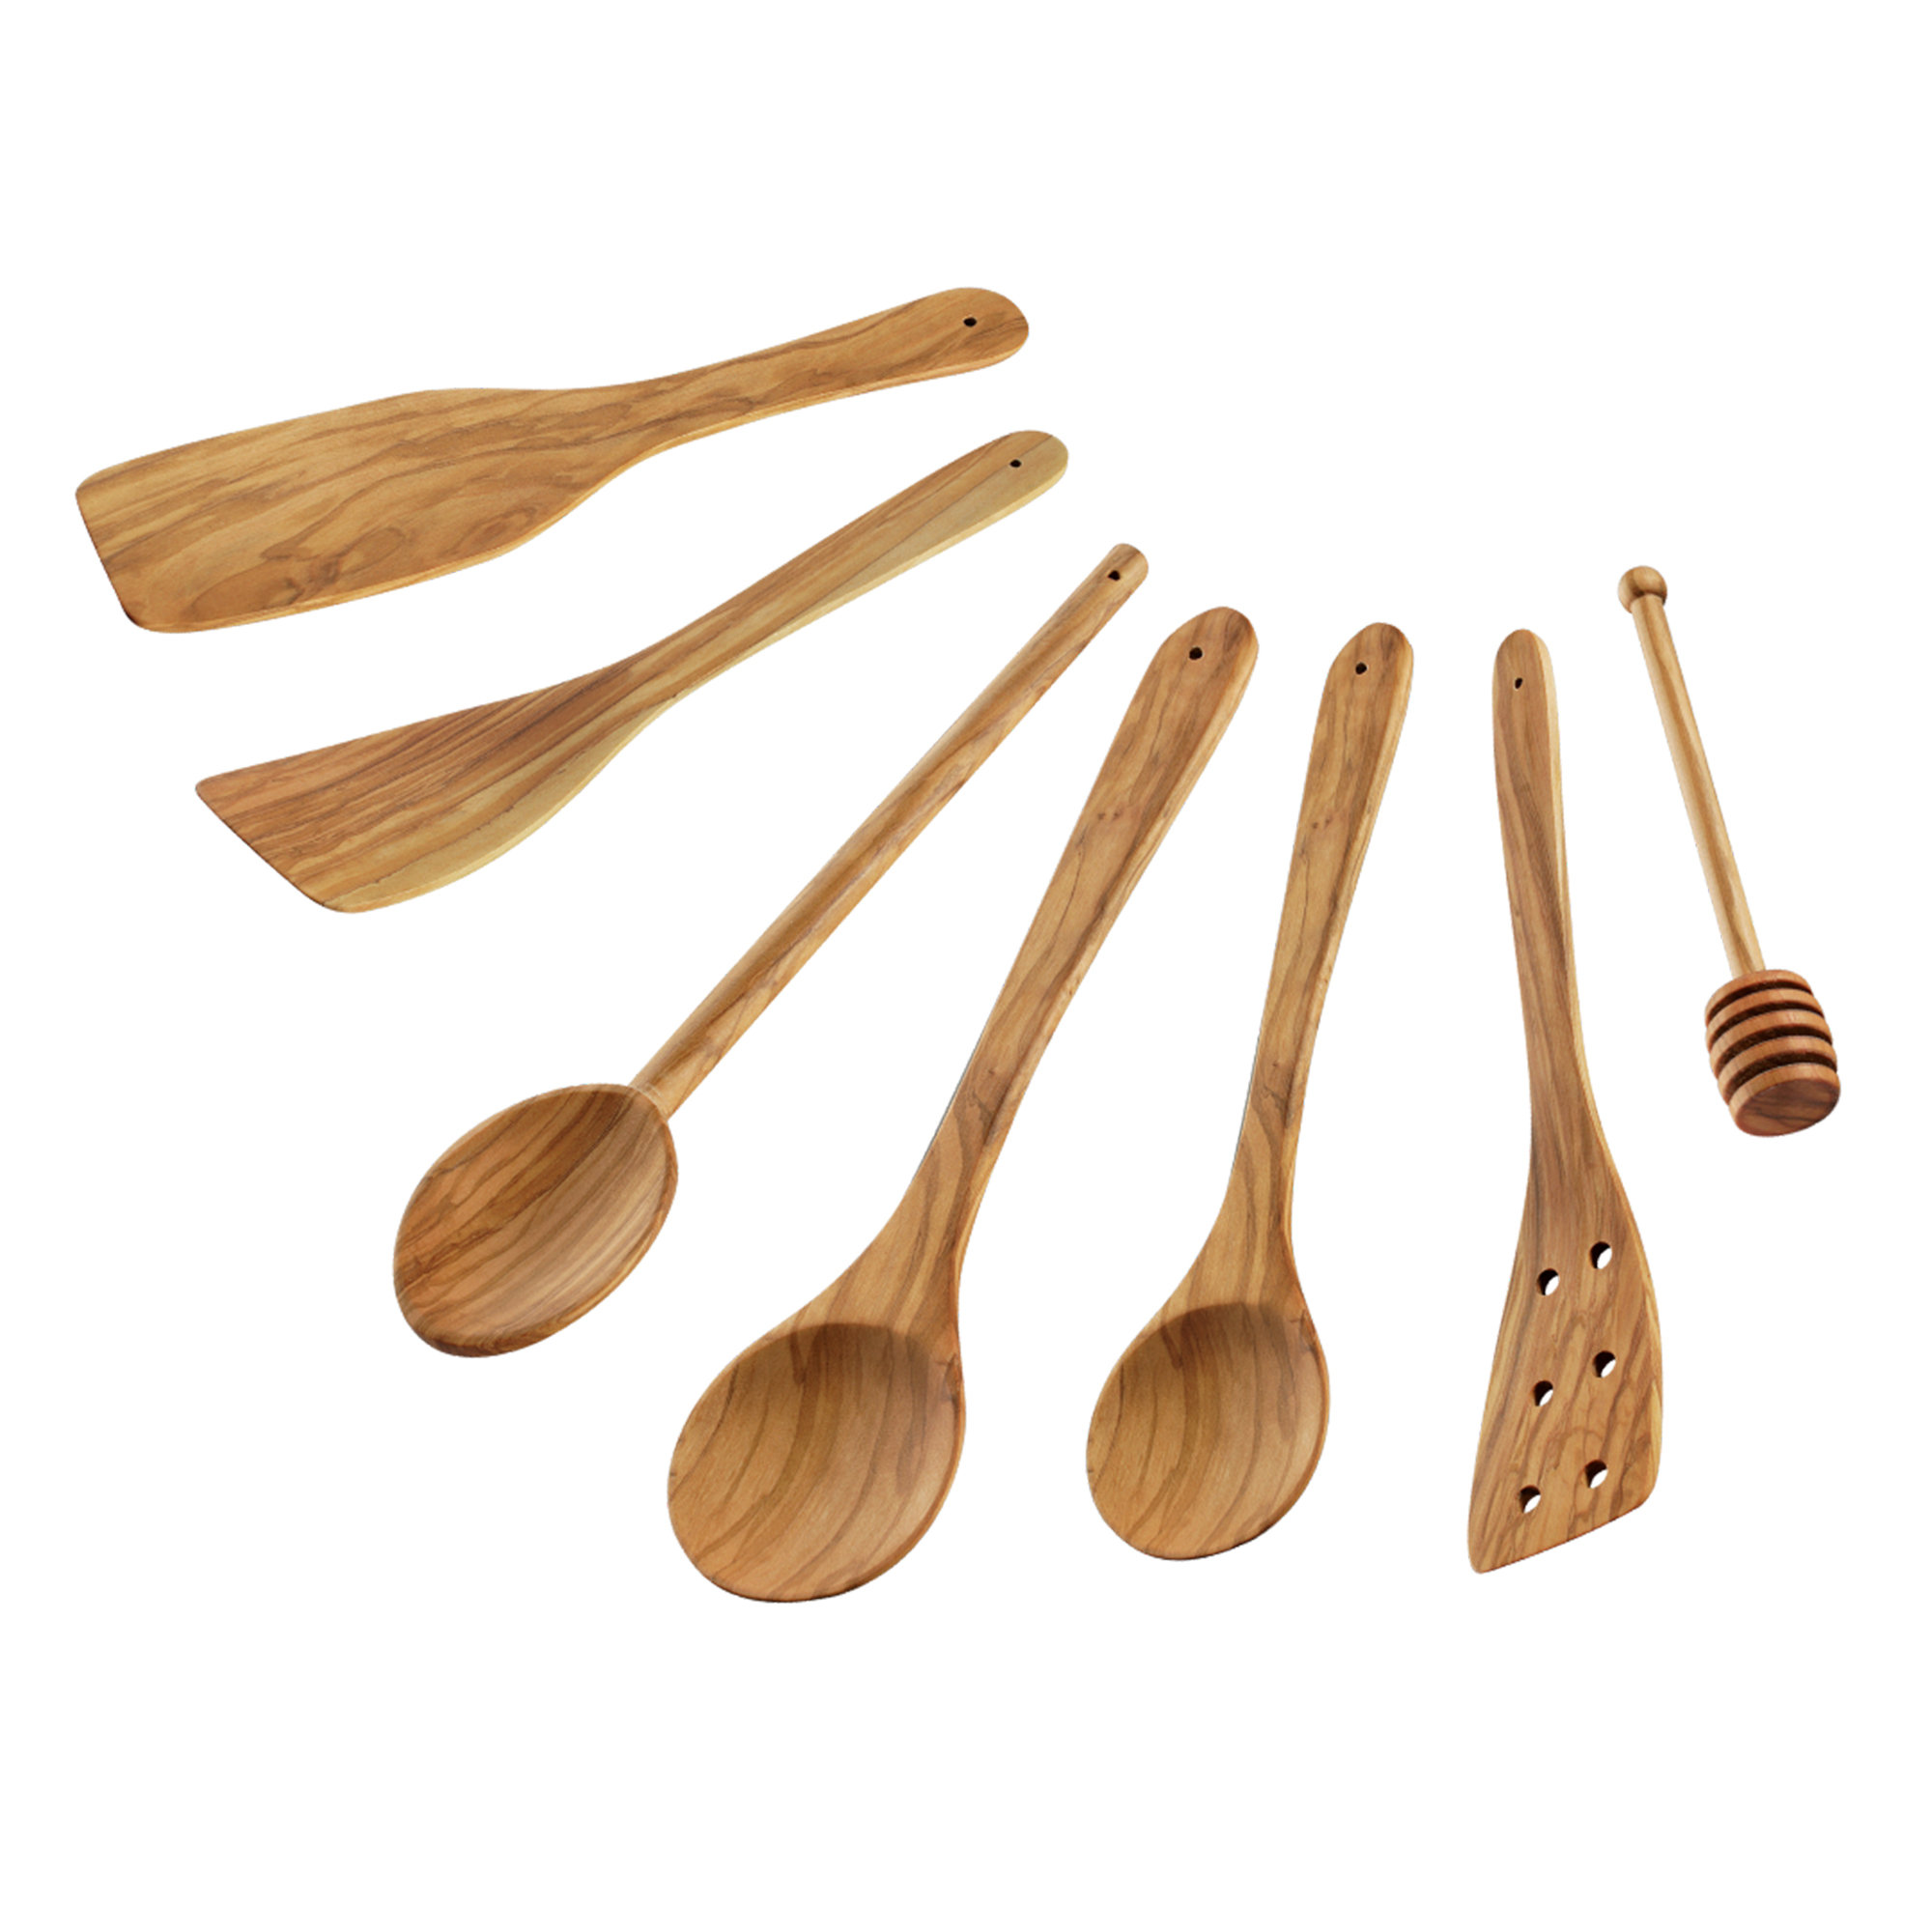 https://assets.wfcdn.com/im/46584051/compr-r85/2454/245466141/cilio-toscana-7-piece-wood-assorted-kitchen-utensil-set.jpg